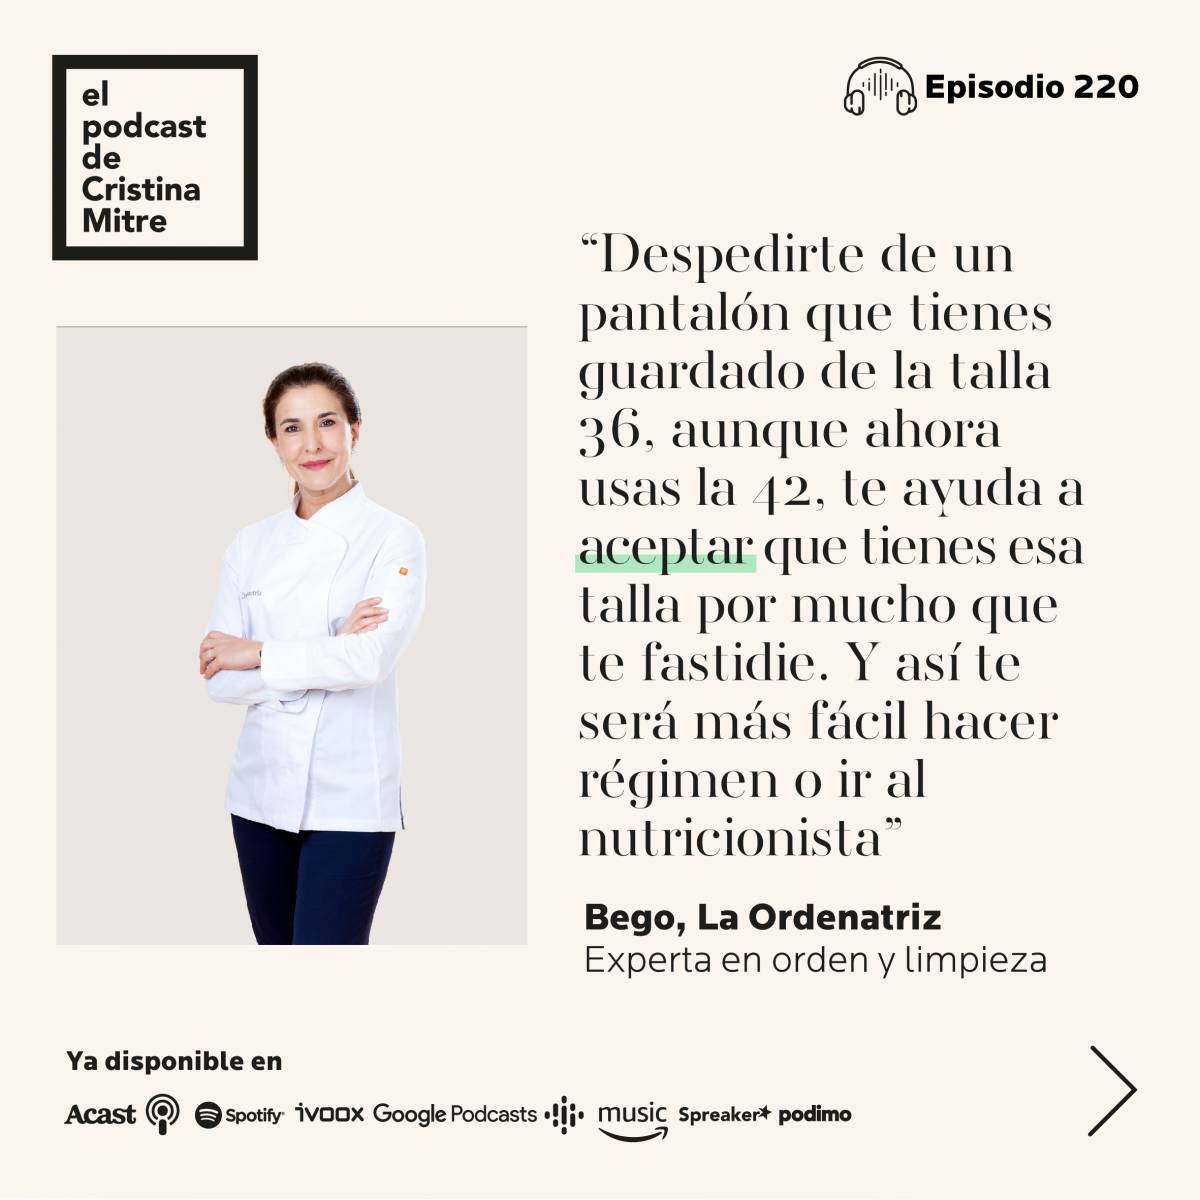 El podcast de Cristina Mitre La ordenatriz Ordenar